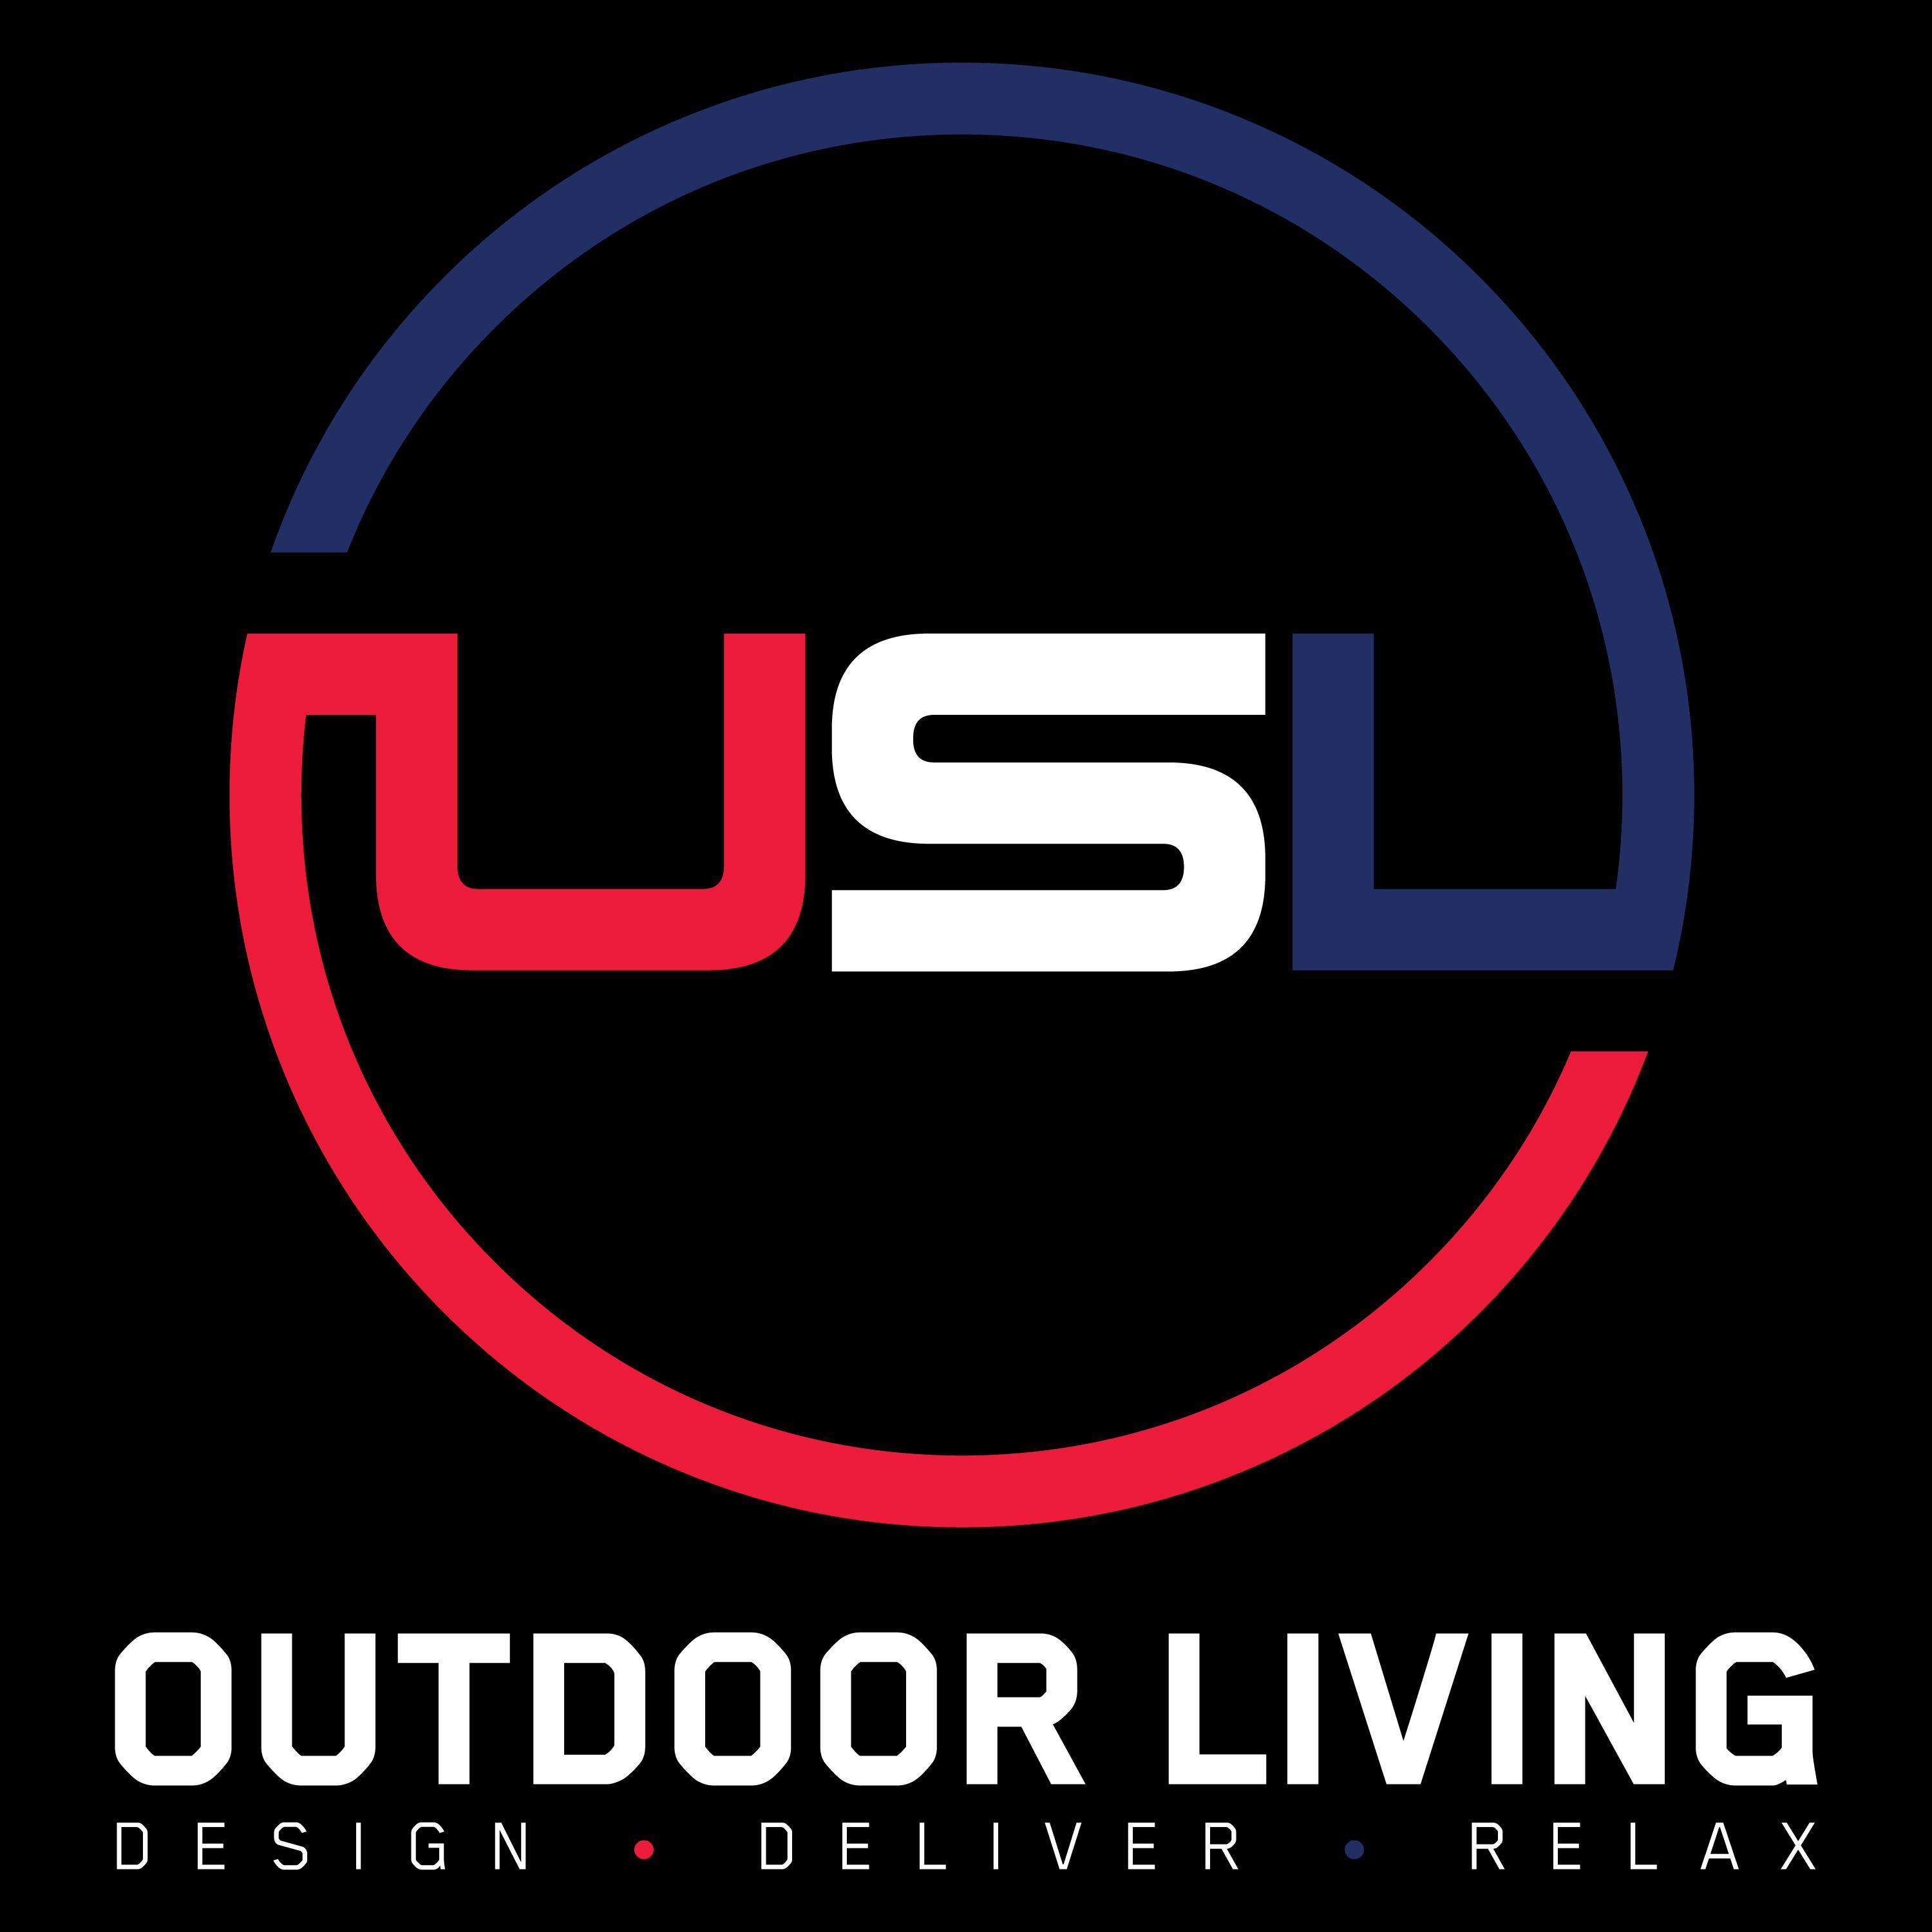 USL Outdoor Living